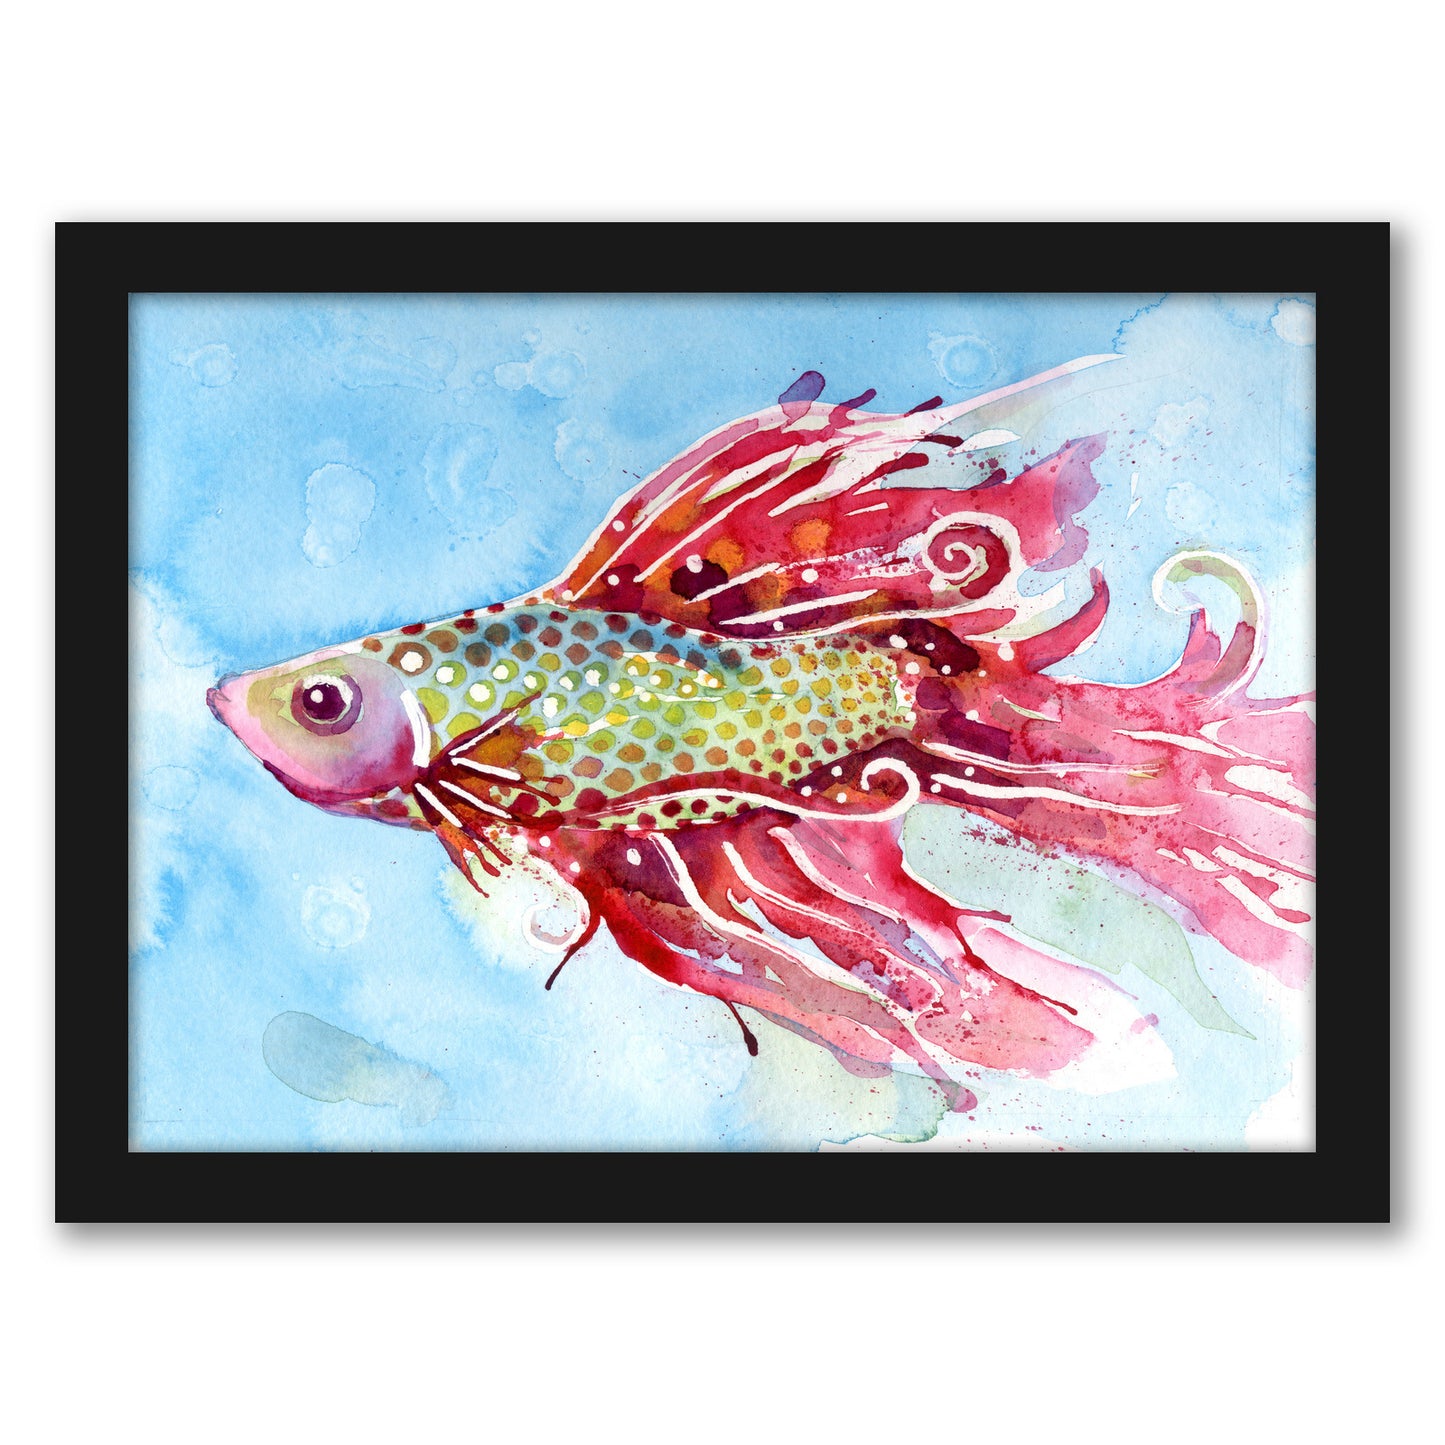 Fish Swim by Sam Nagel - Framed Print